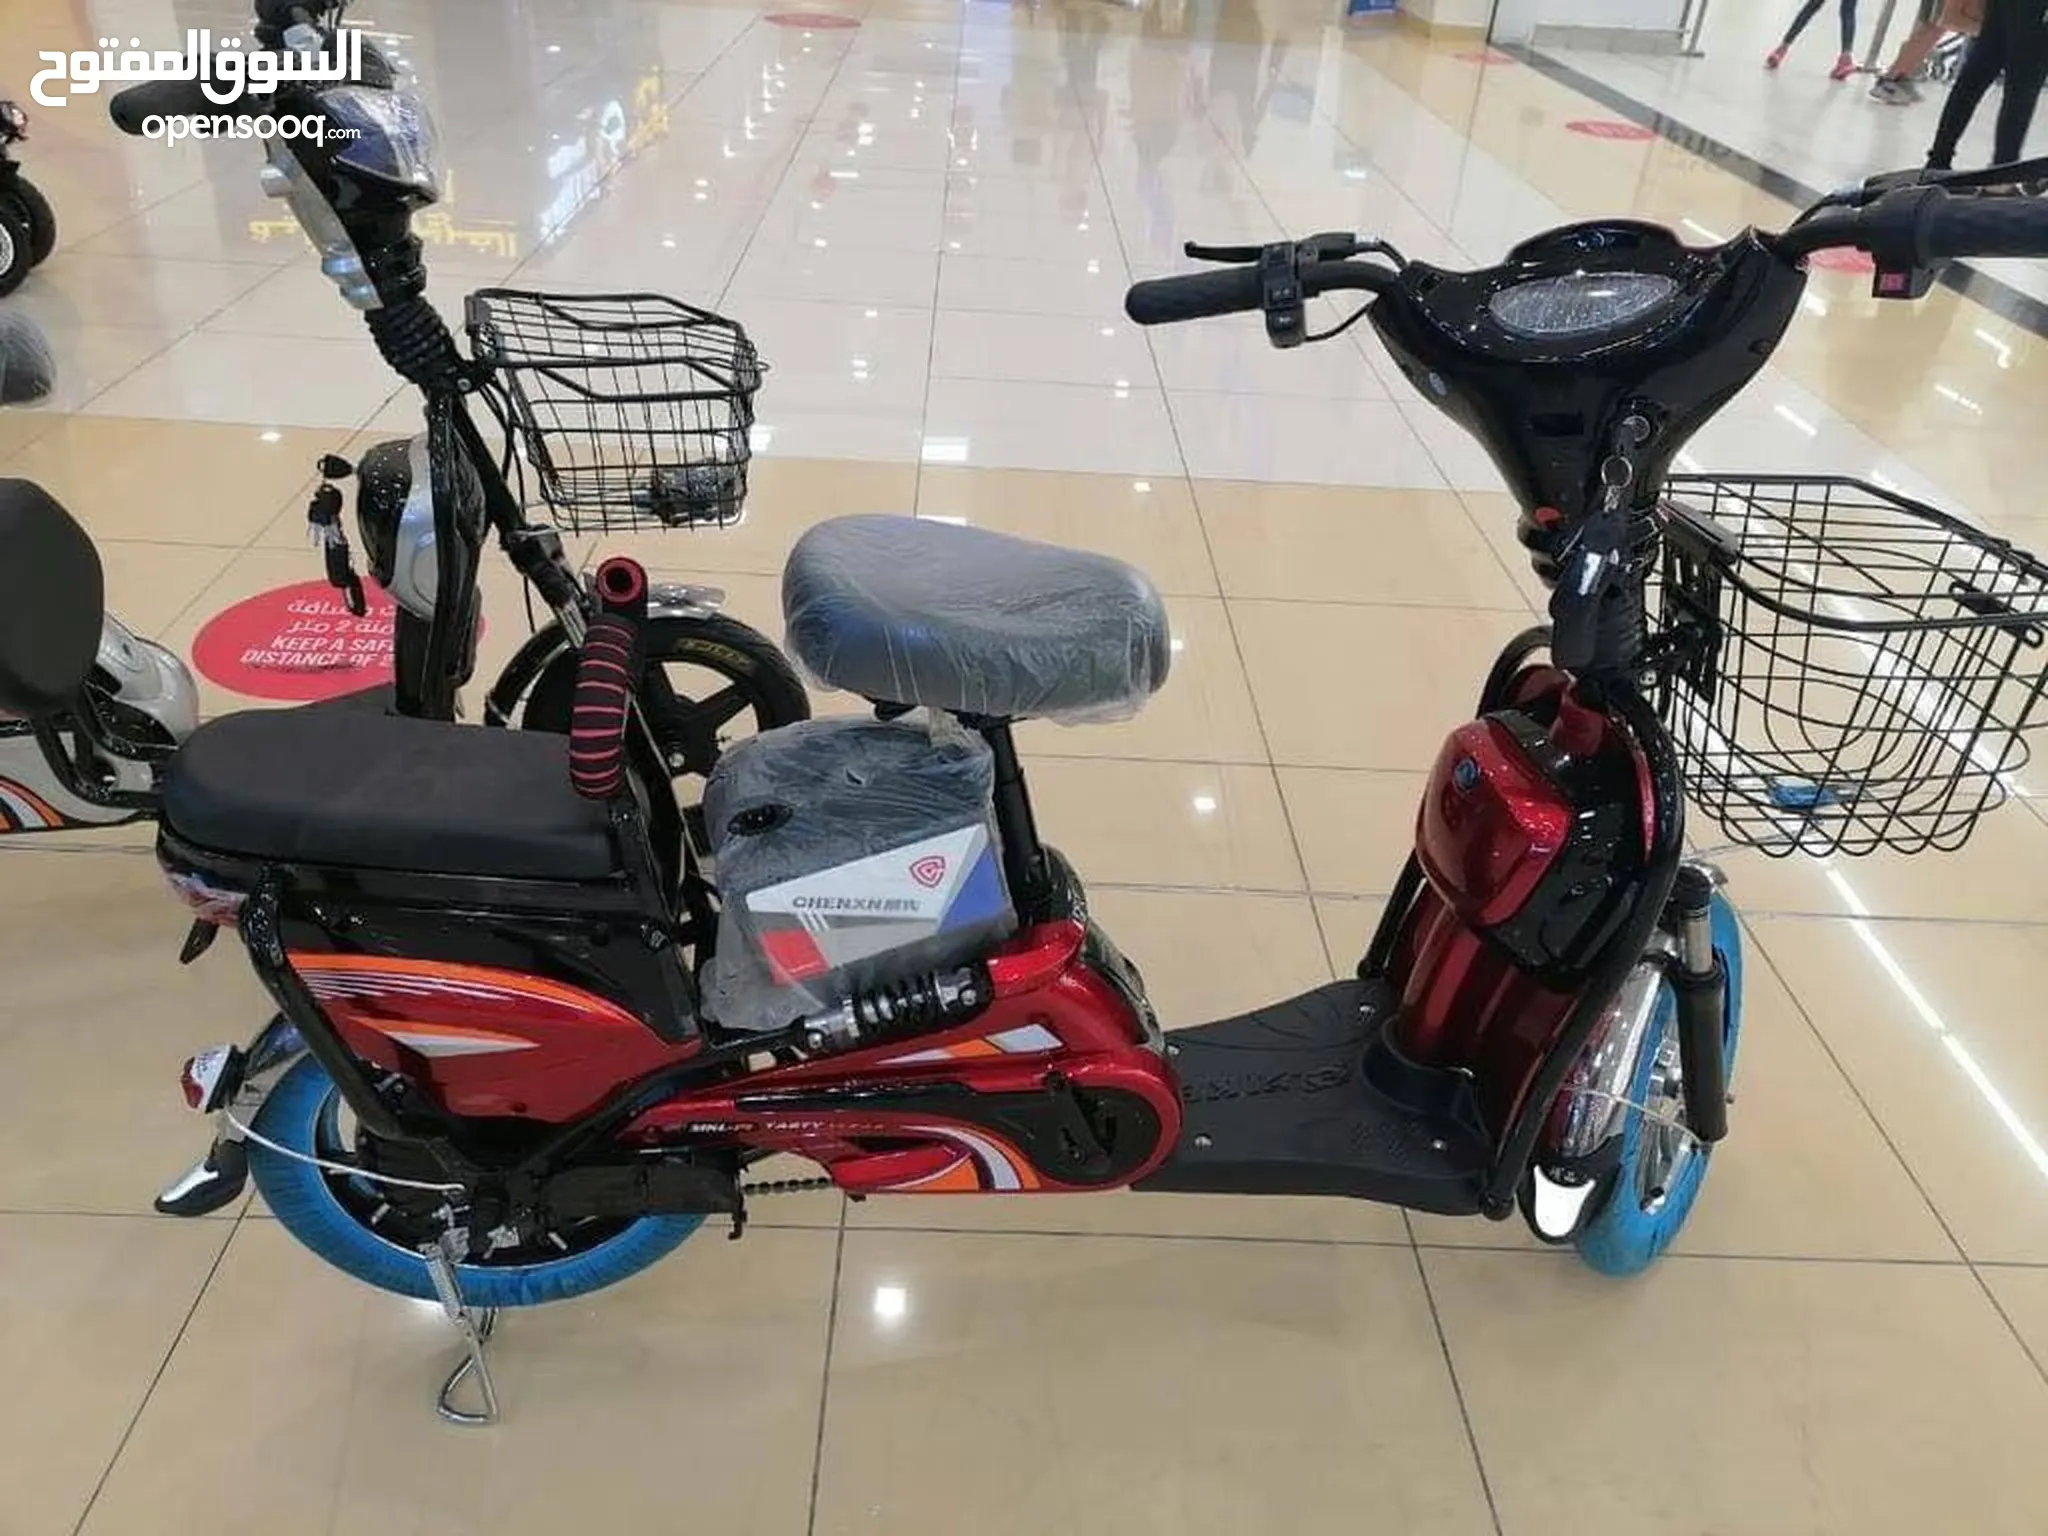 دراجات كهربائية للبيع في مصر : افضل سعر | السوق المفتوح